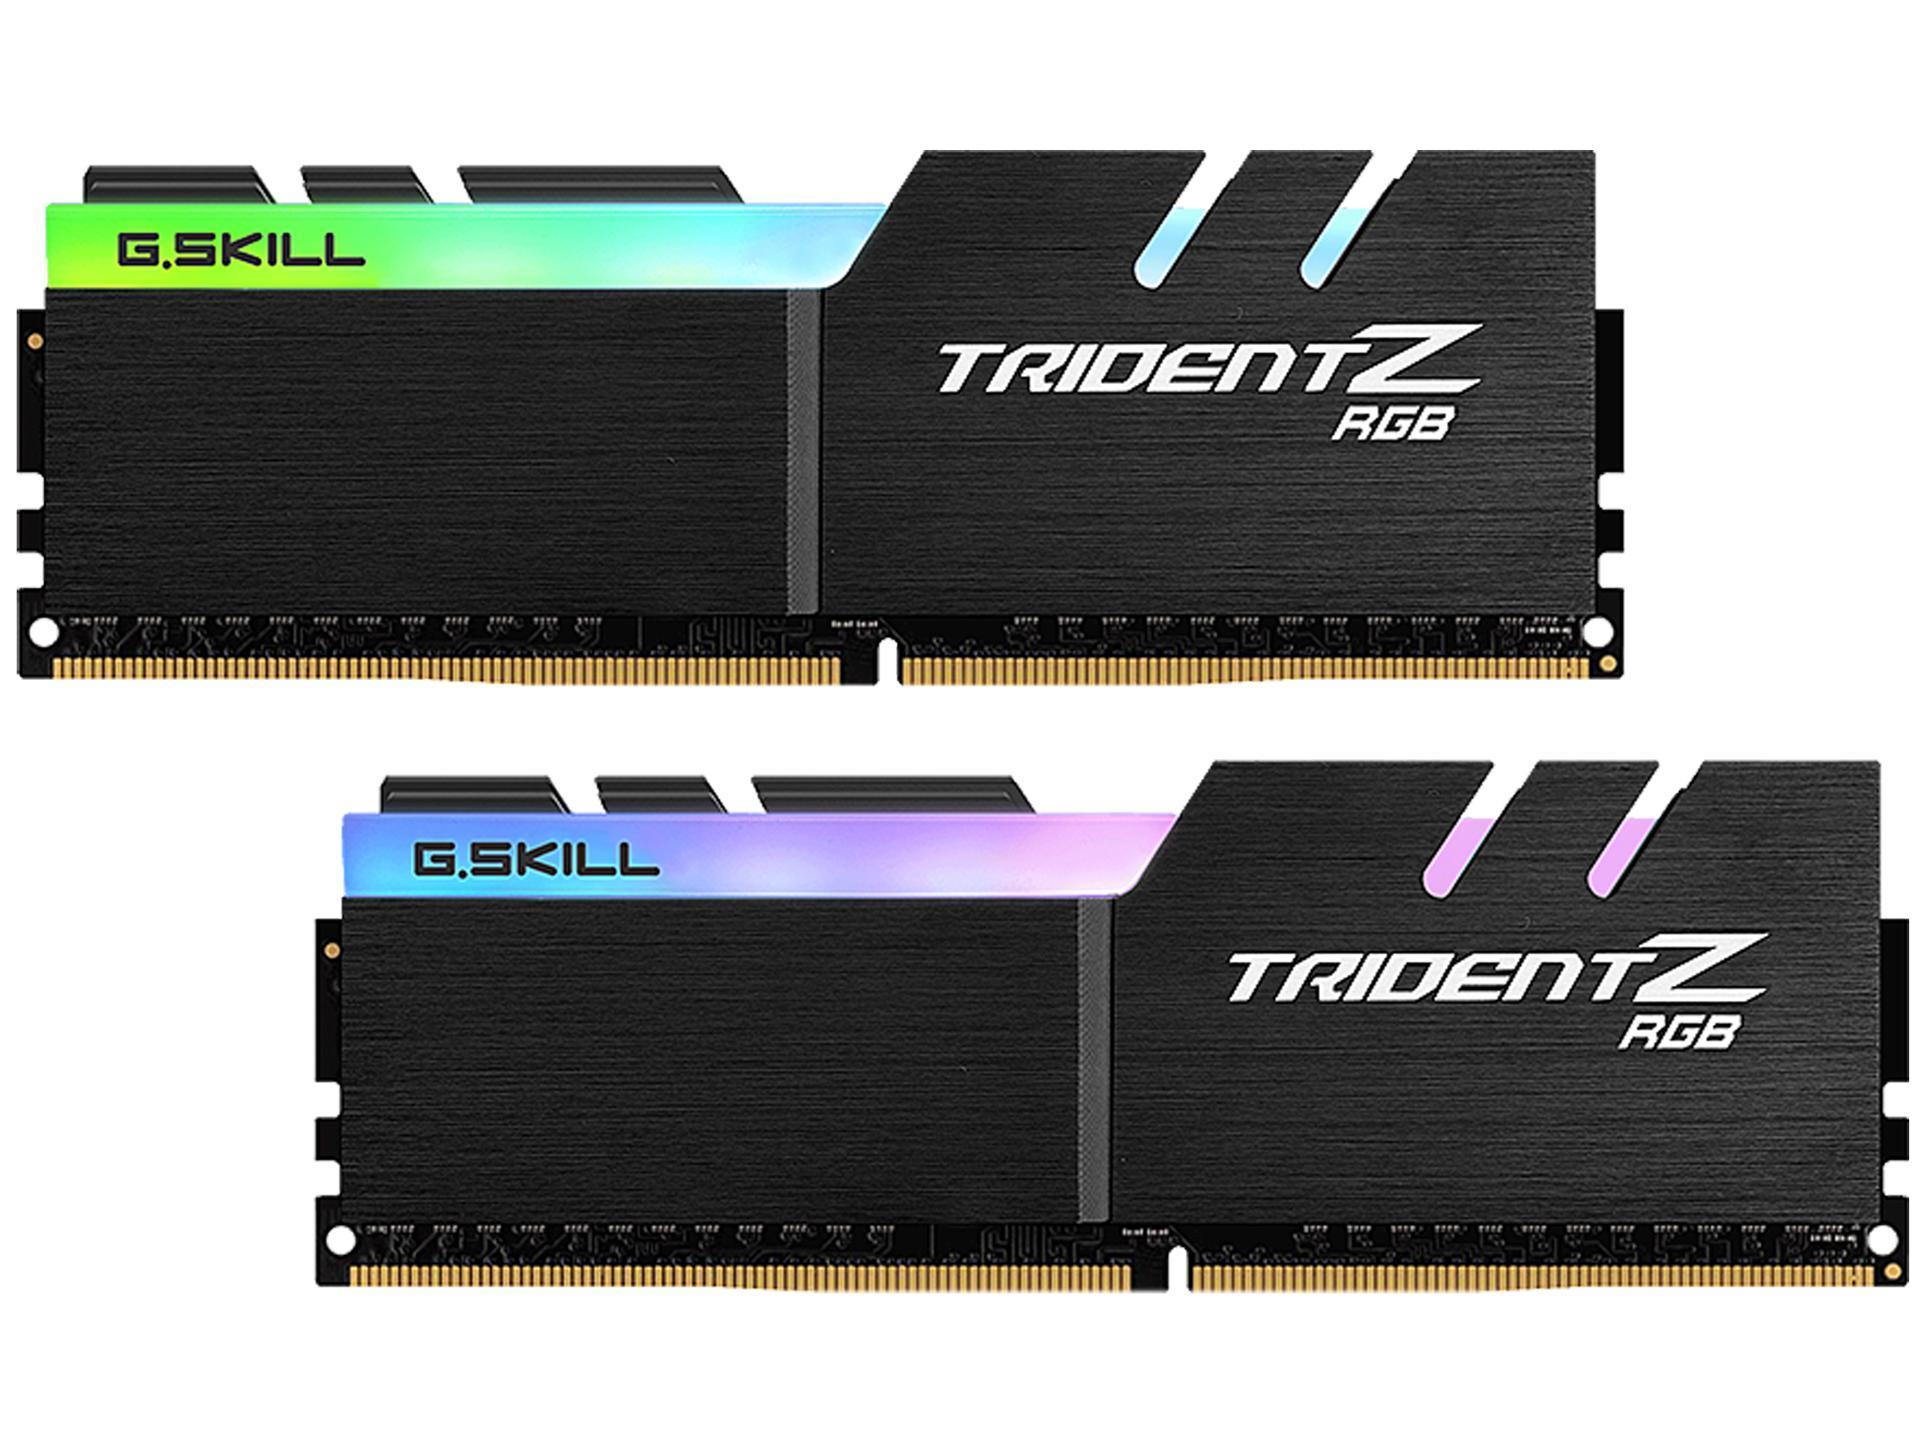 RAM G.Skill Trident Z RGB 16GB (2x8) DDR4-2400 CL15 (F4-2400C15D-16GTZRX) slide image 1